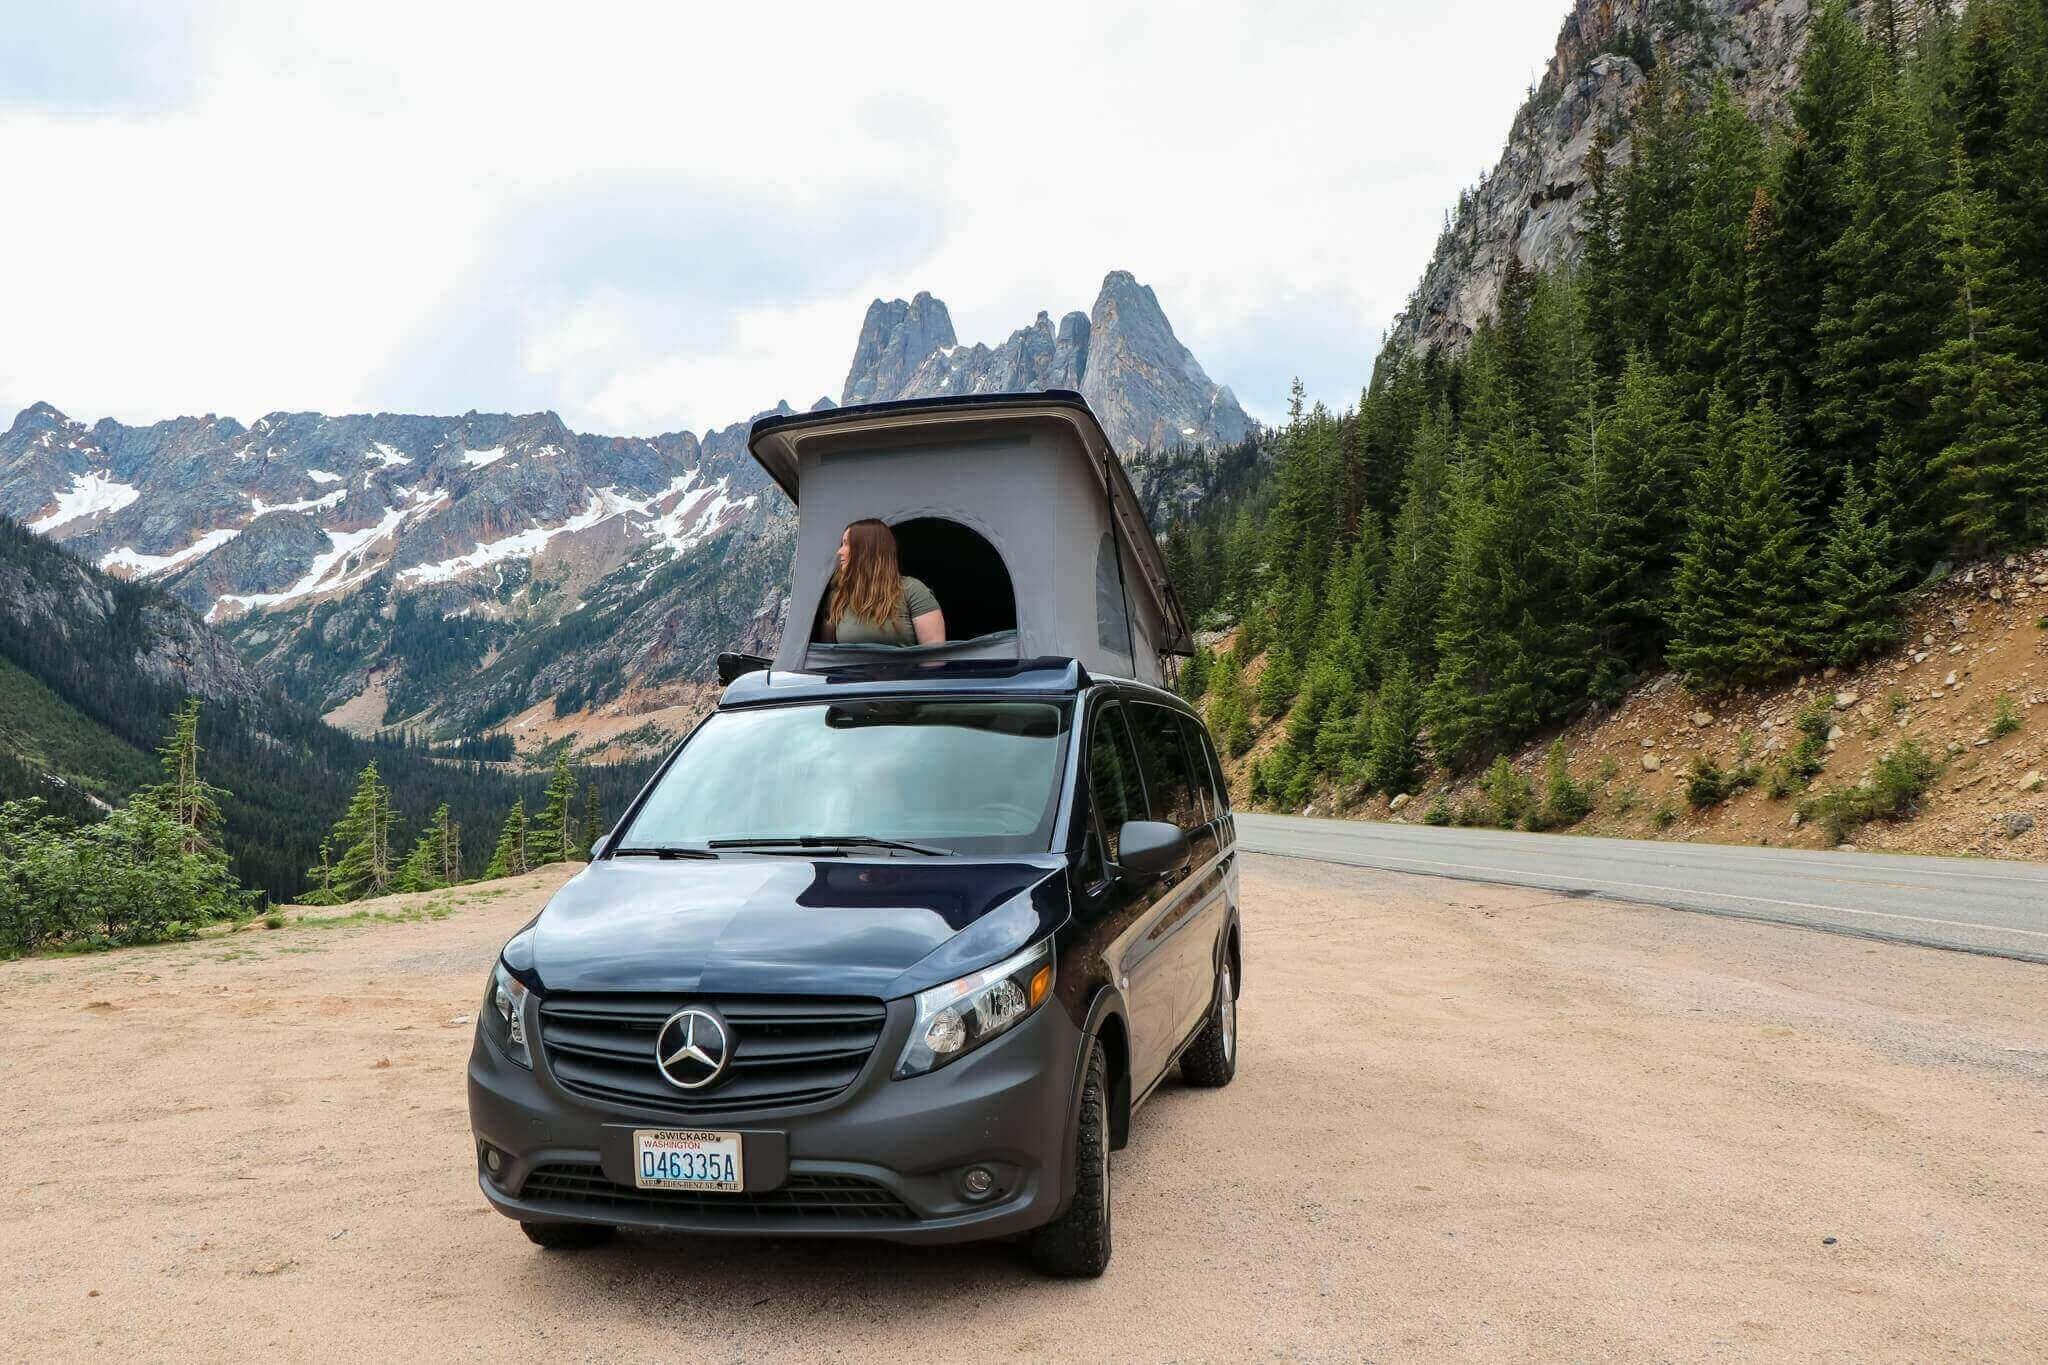 24 Best Small Camper Vans For A Van Conversion